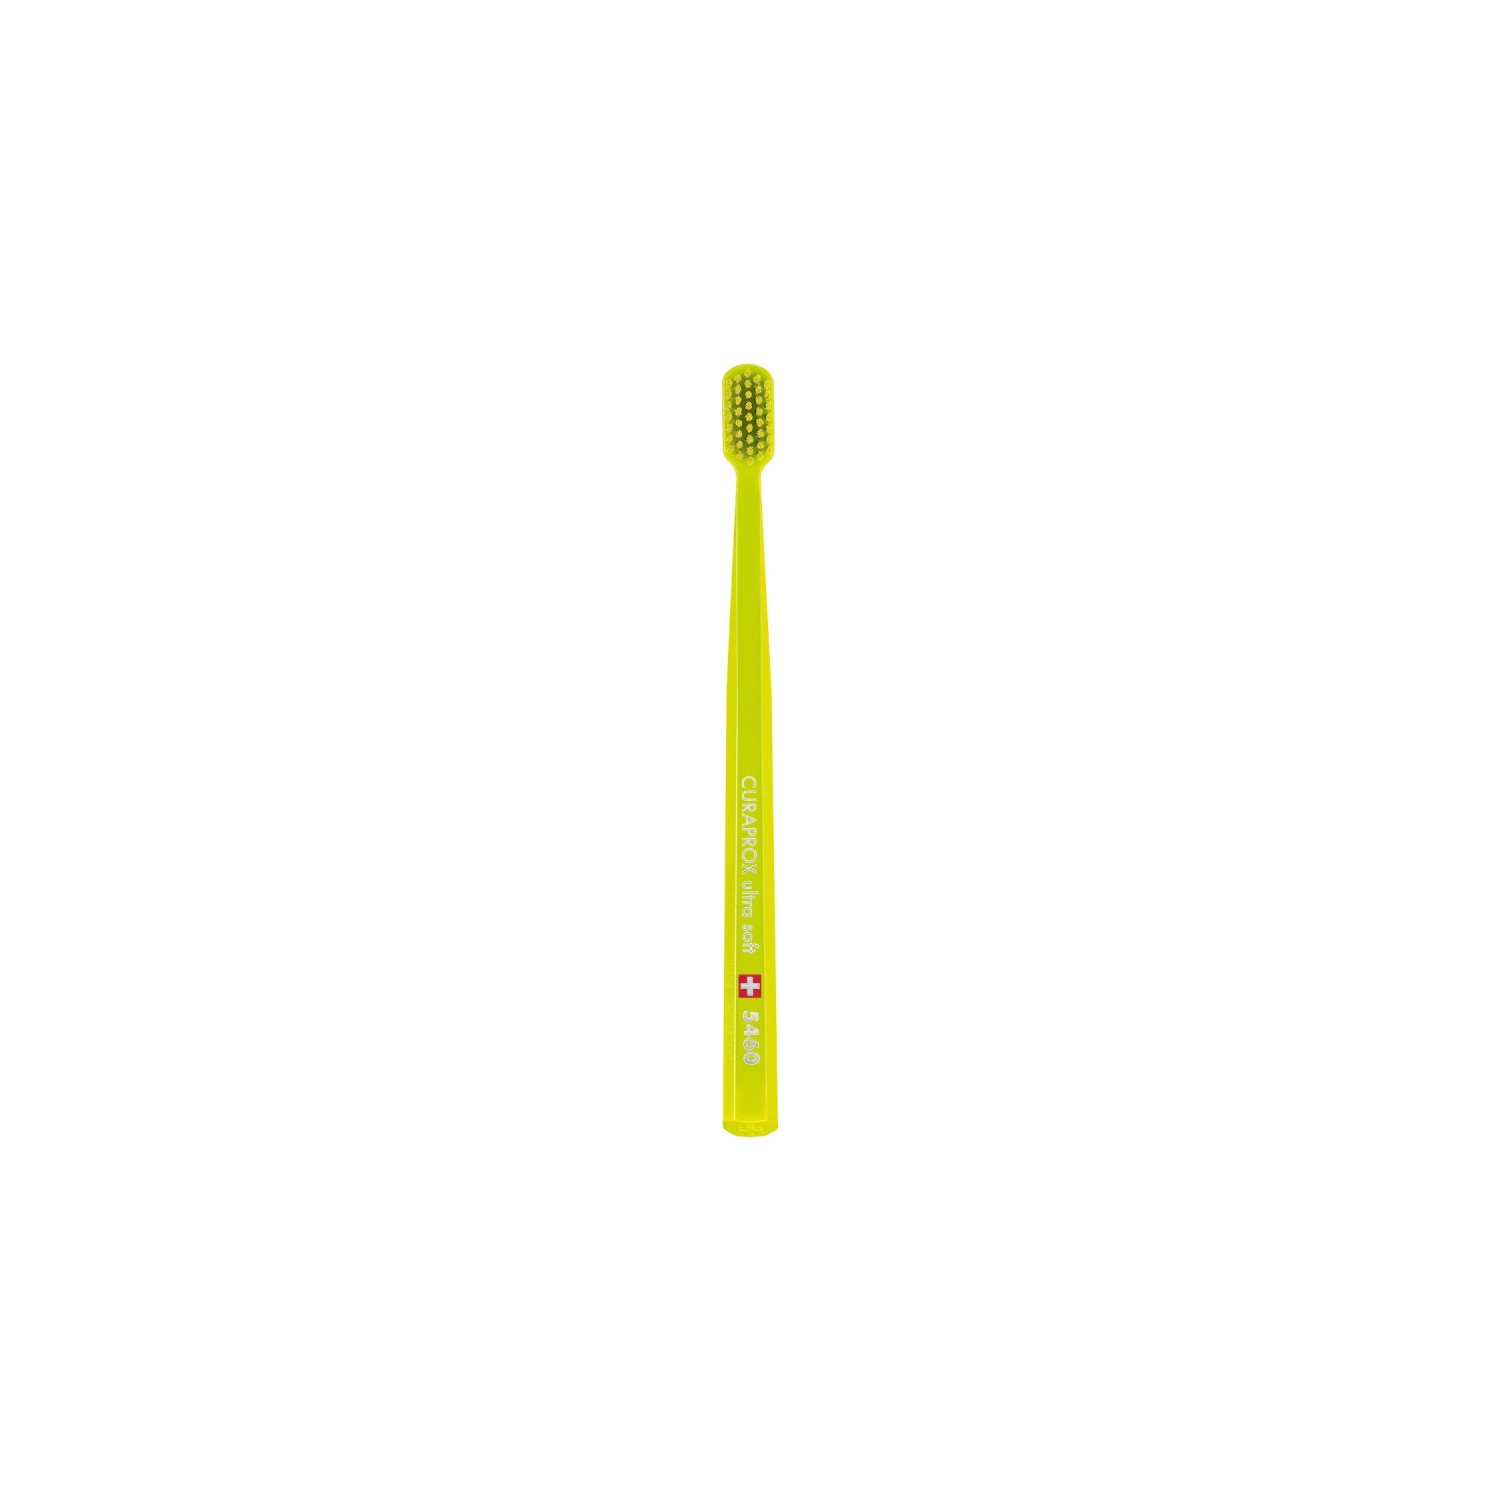 Зубная щетка Curaprox ультрамягкая CS5460, желтый household electric toothbrush usb charging soft hair waterproof wave vibration toothbrush